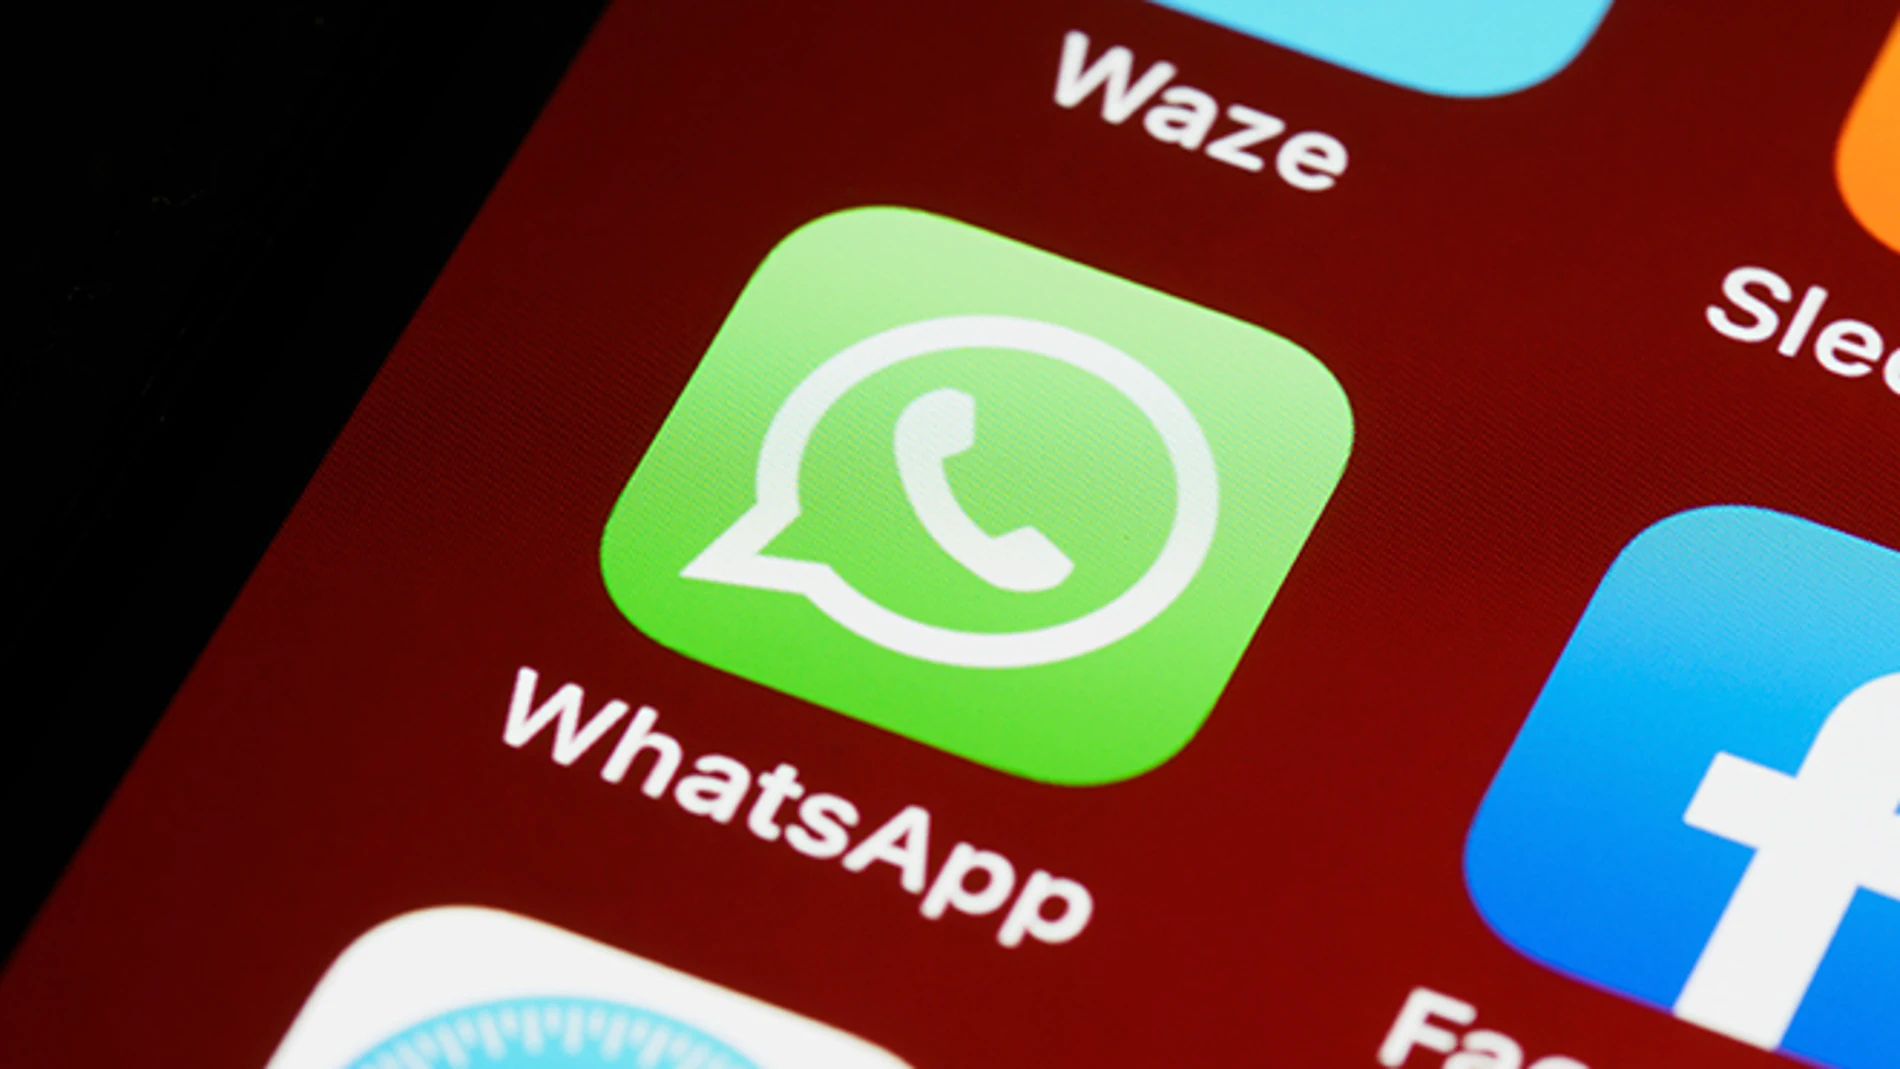 Cómo vaciar la caché de WhatsApp si la app te va lenta o no se actualiza